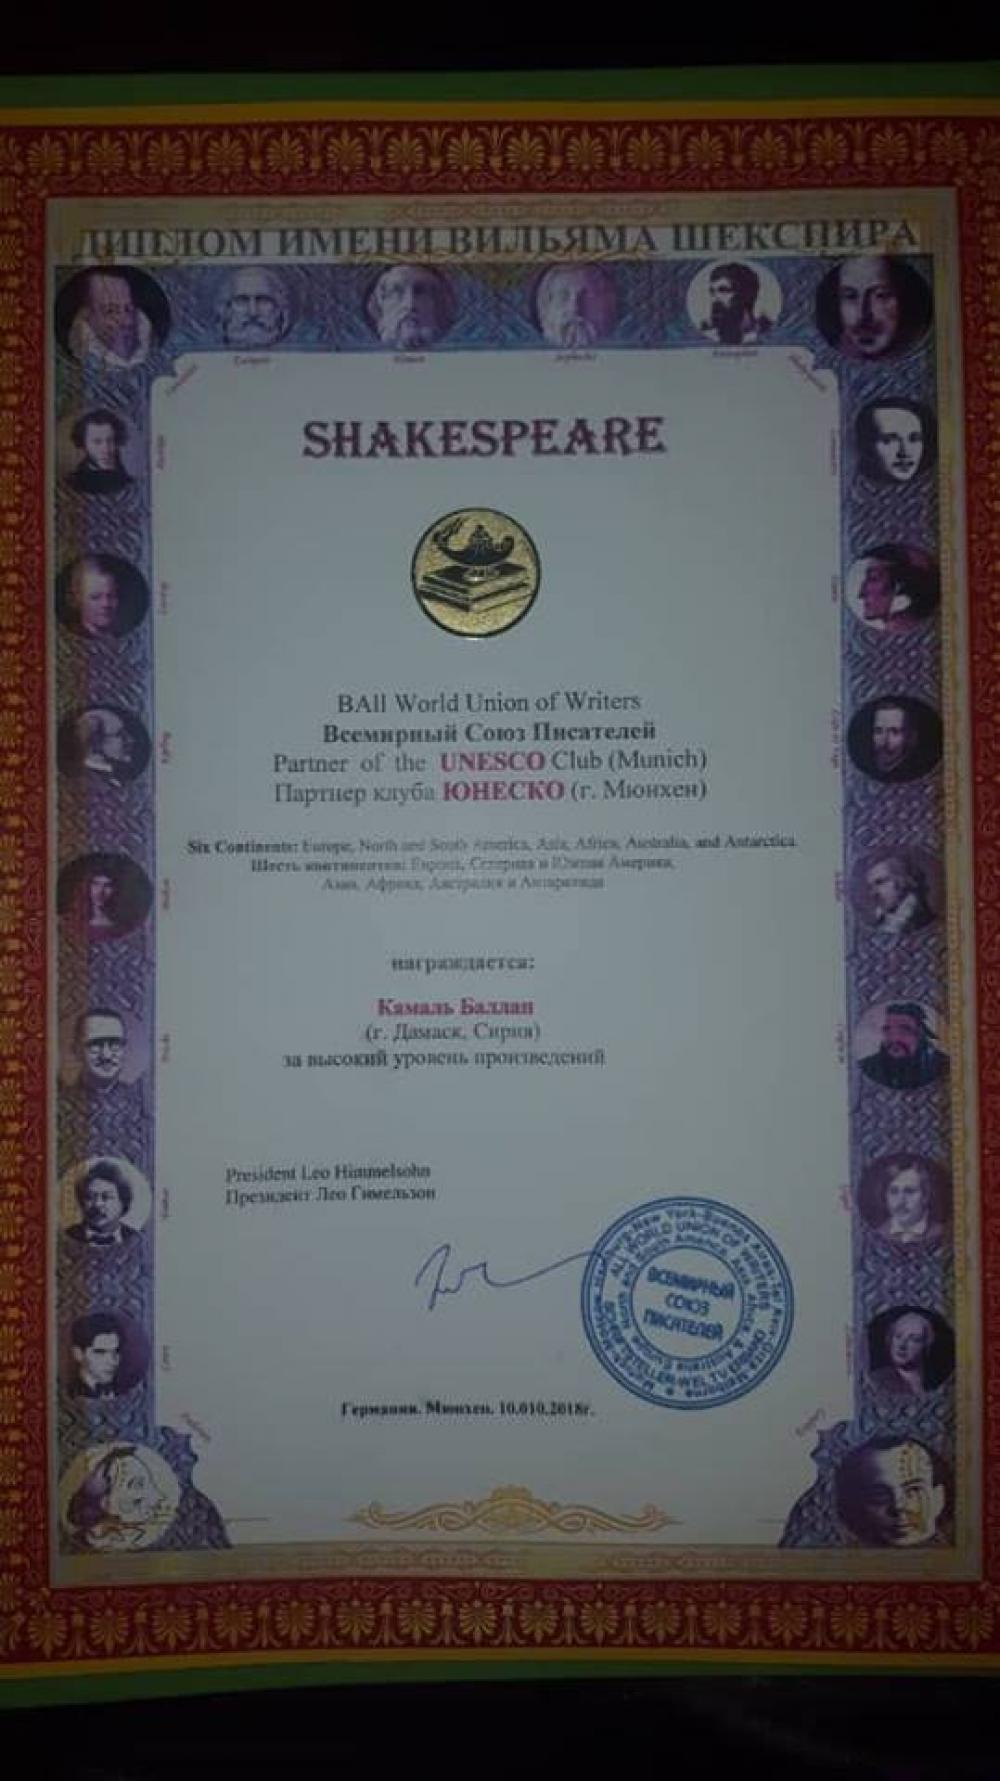 الفنان السوري "كمال بلان" ينال "دبلوم شكسبير للإبداع عالي المستوى" في موسكو